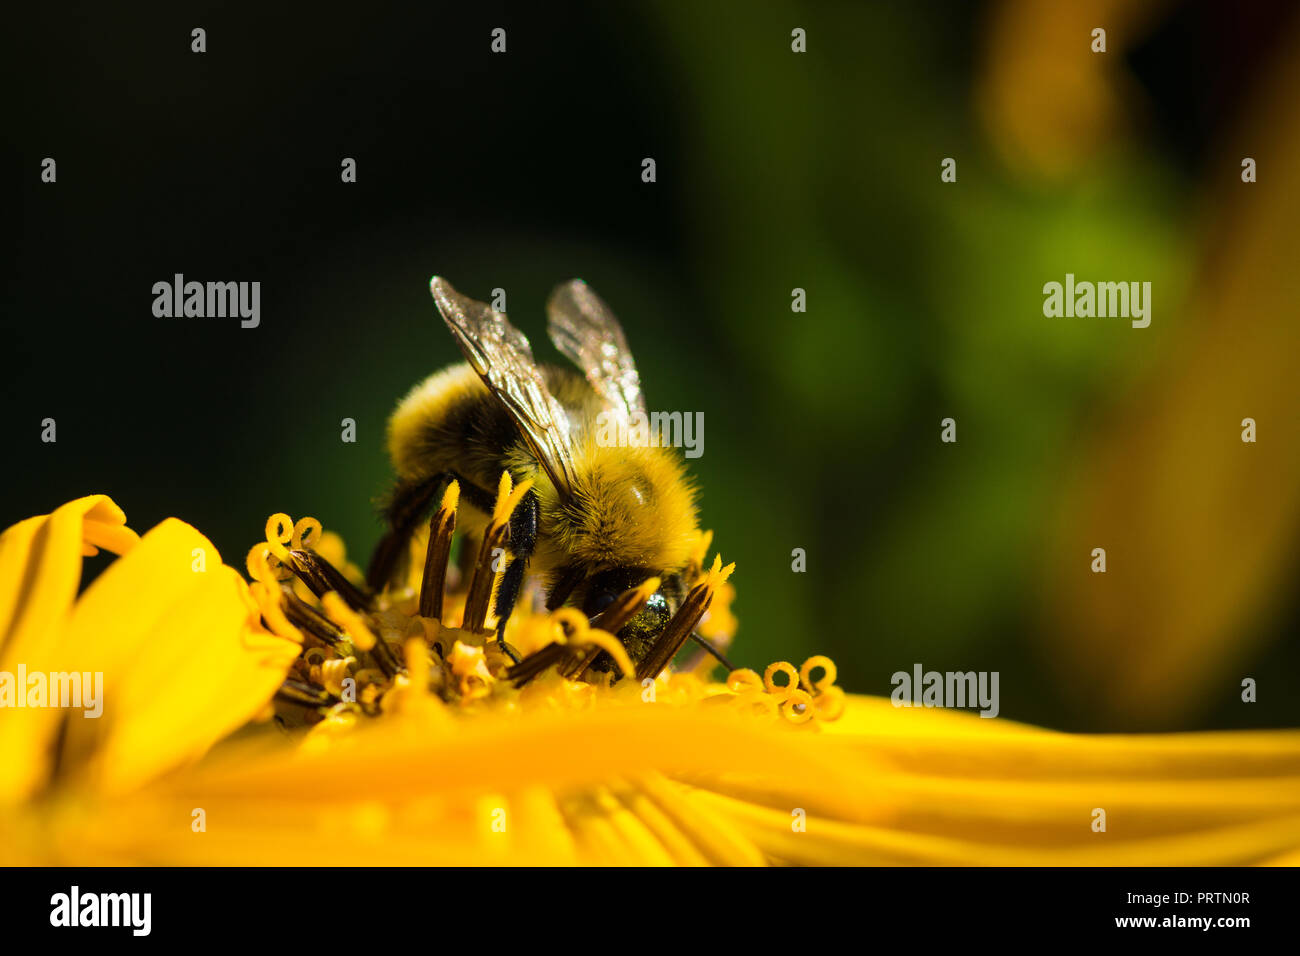 Bumblebee on the flower Ligularia dentata orthello. Shallow depth of field. Stock Photo